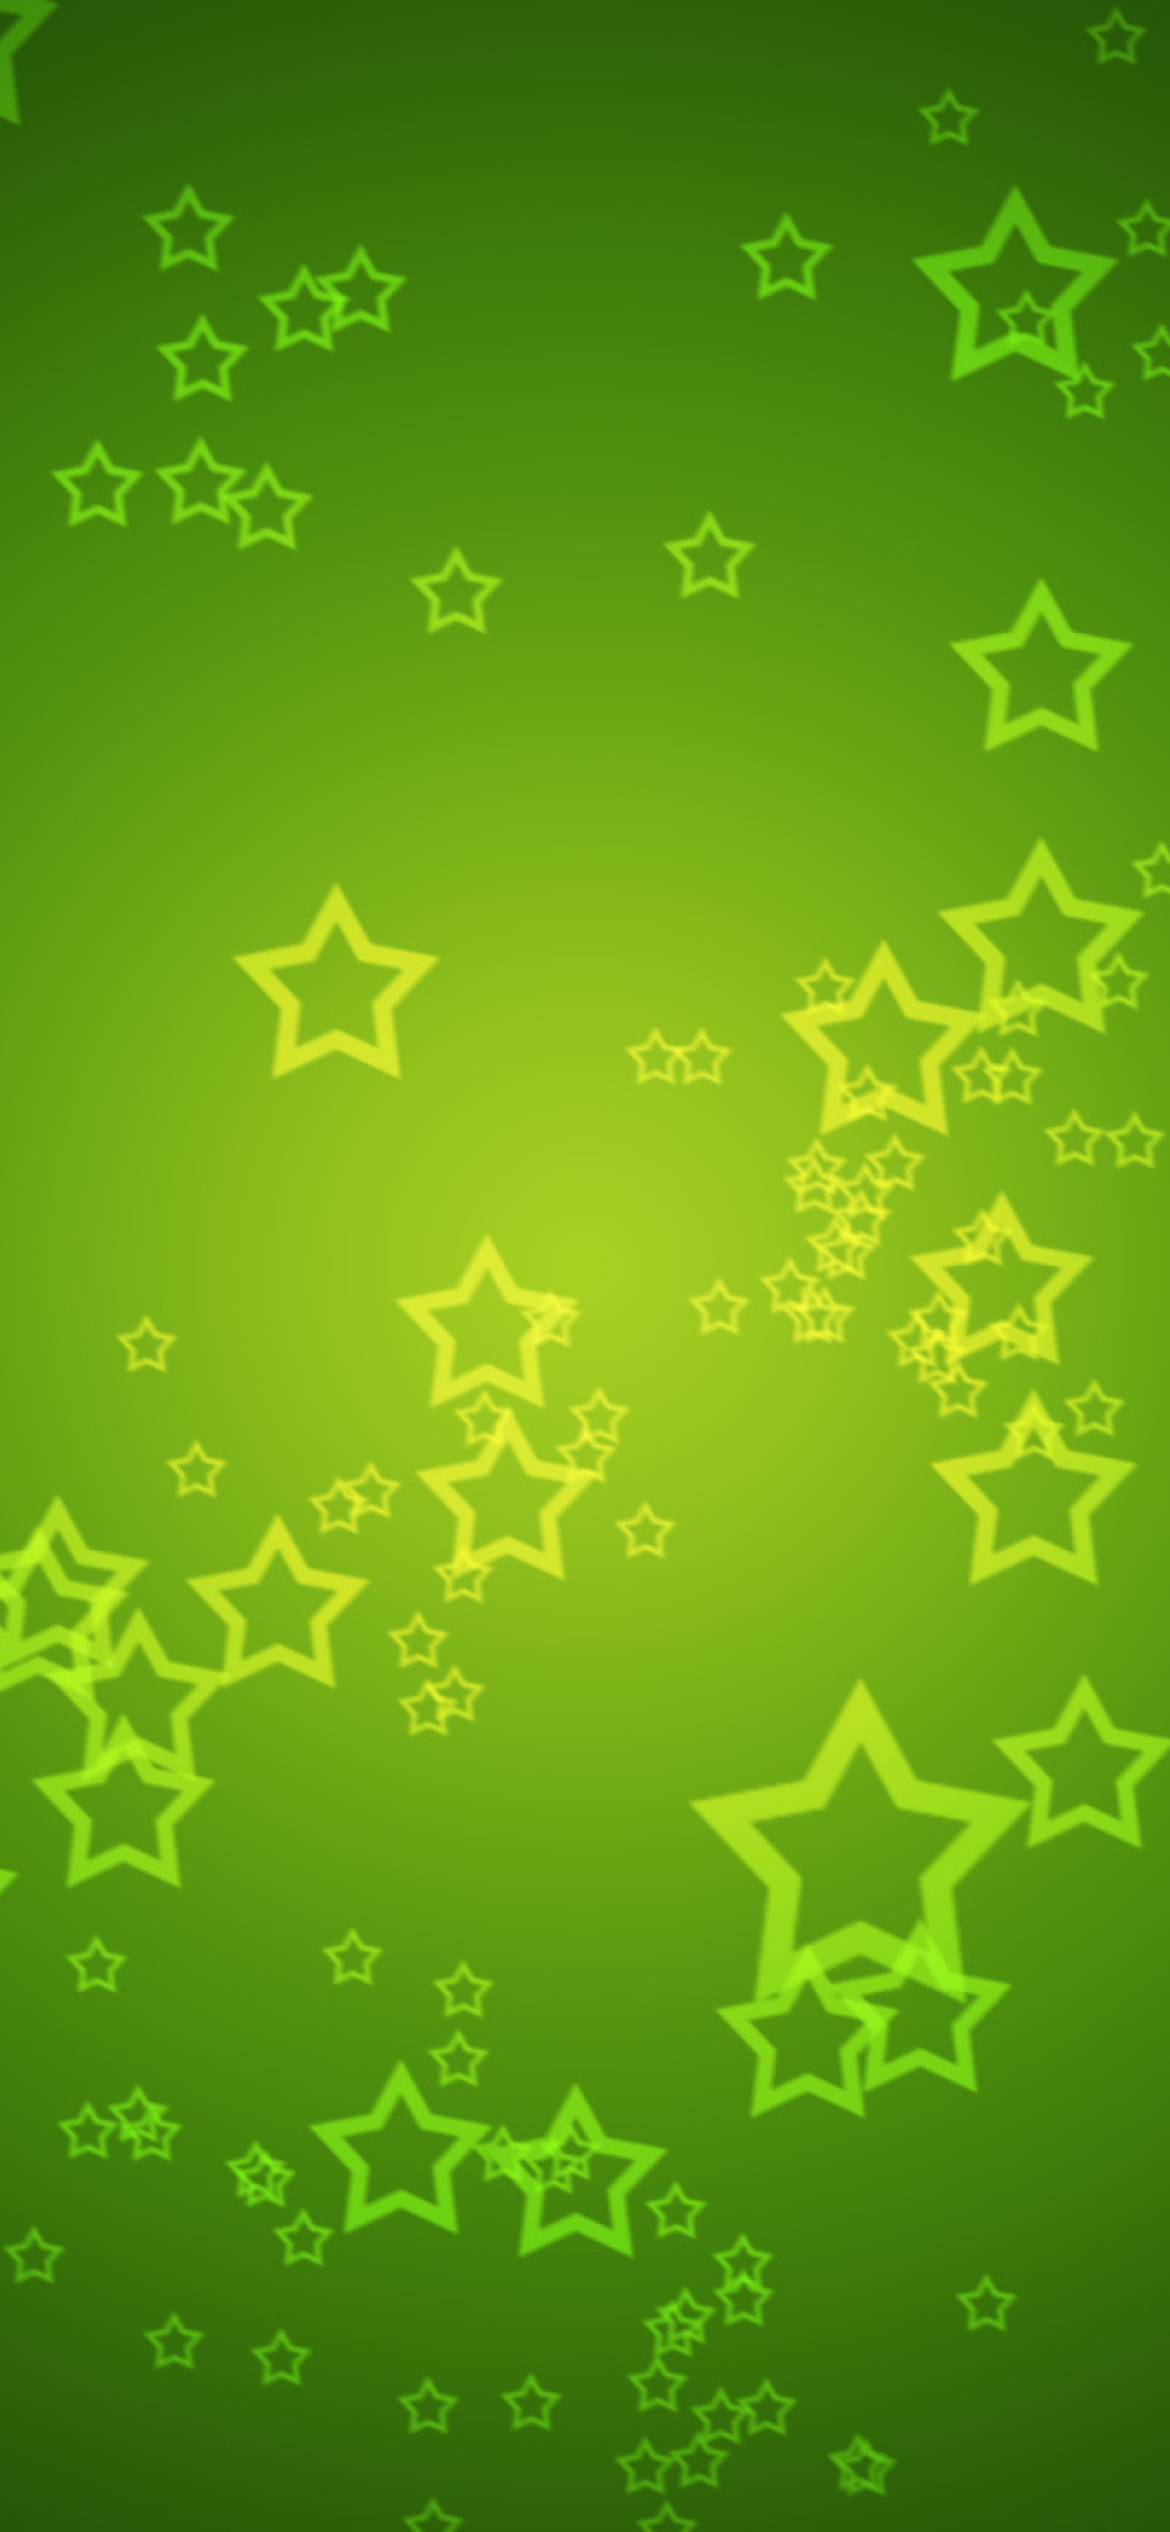 Das Green Stars Wallpaper 1170x2532